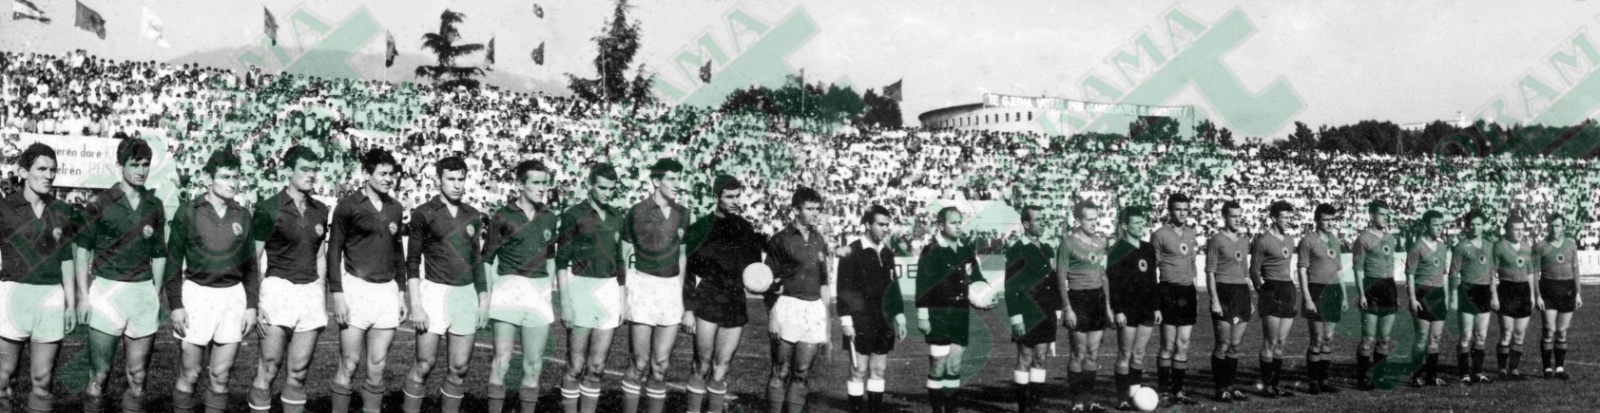 MAJ 1967, në “Qemal Stafa”, Shqipëri-Jugosllavi 0-2